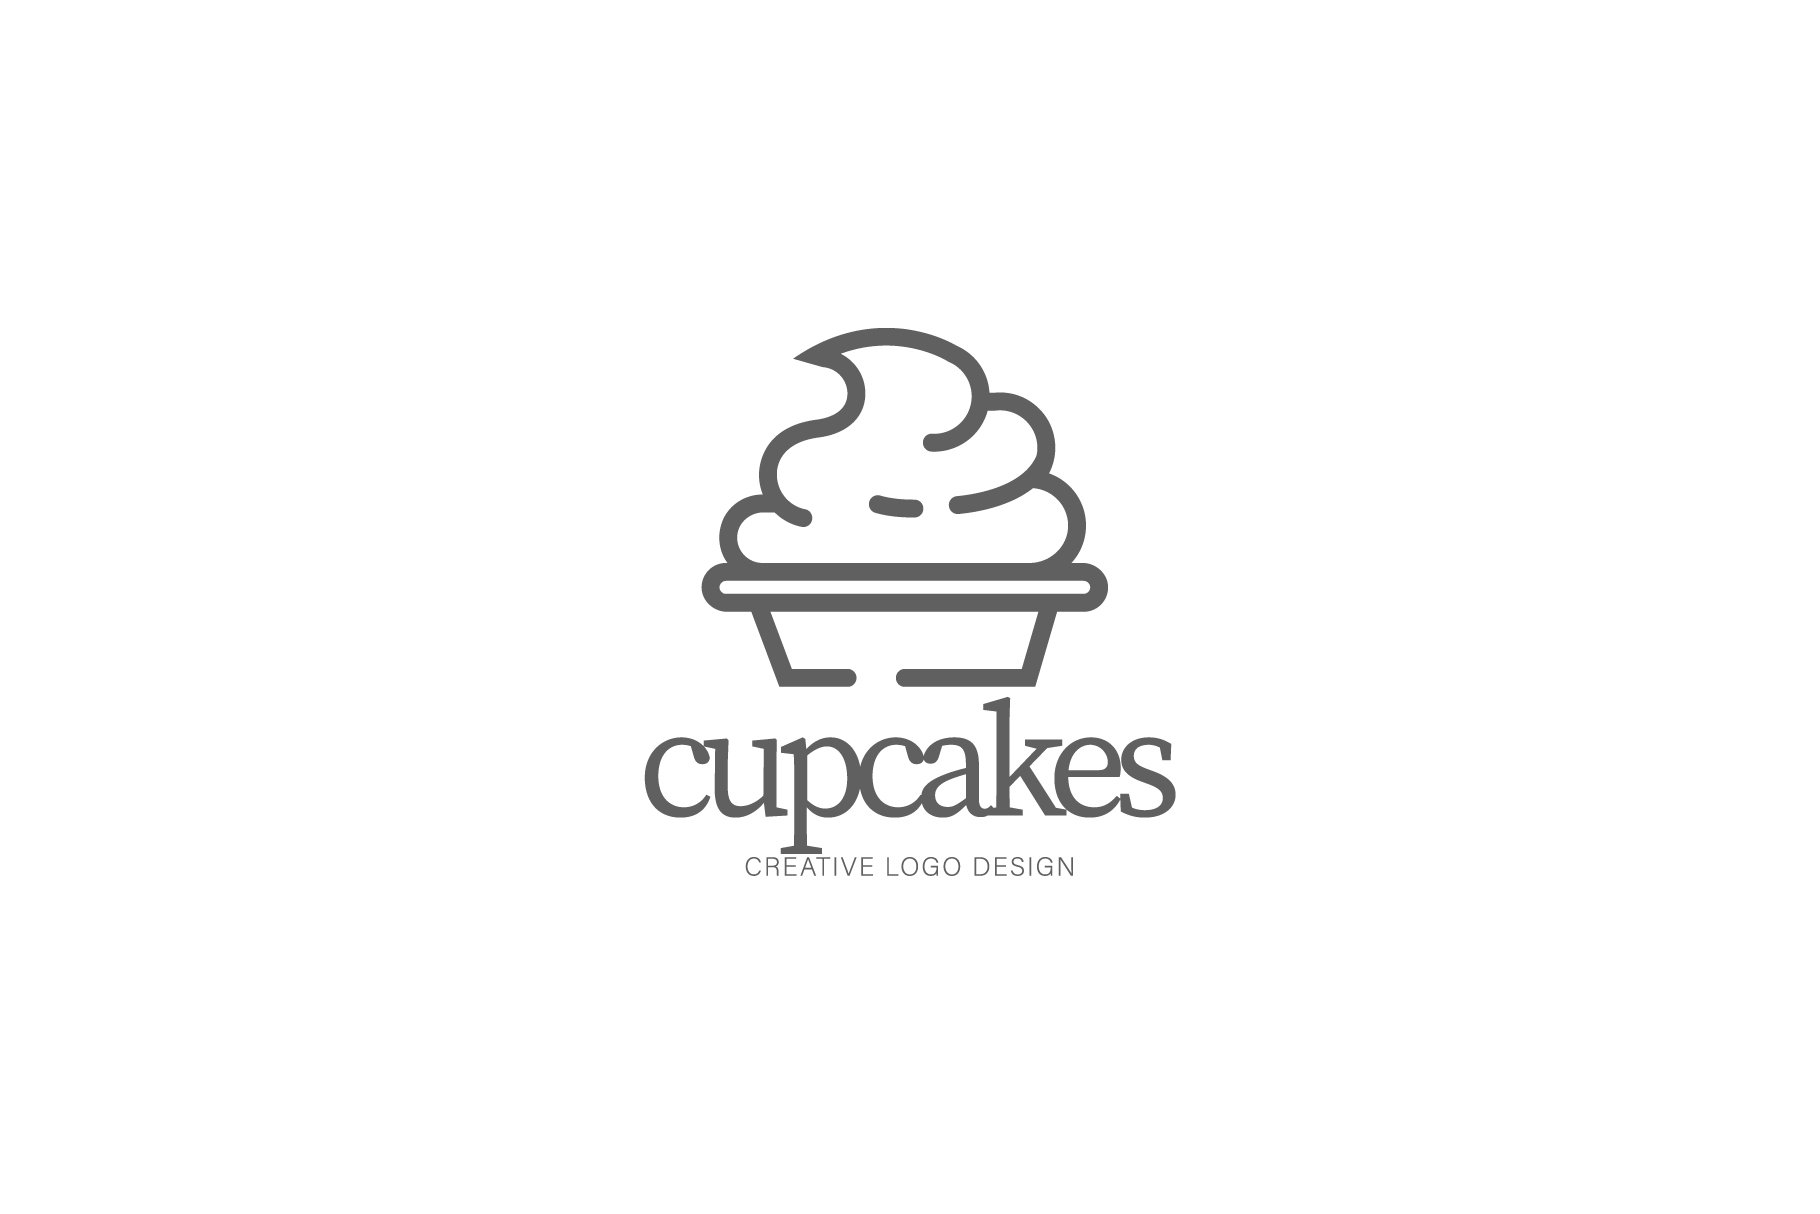 Cupcake logo Royalty Free Vector Image - VectorStock